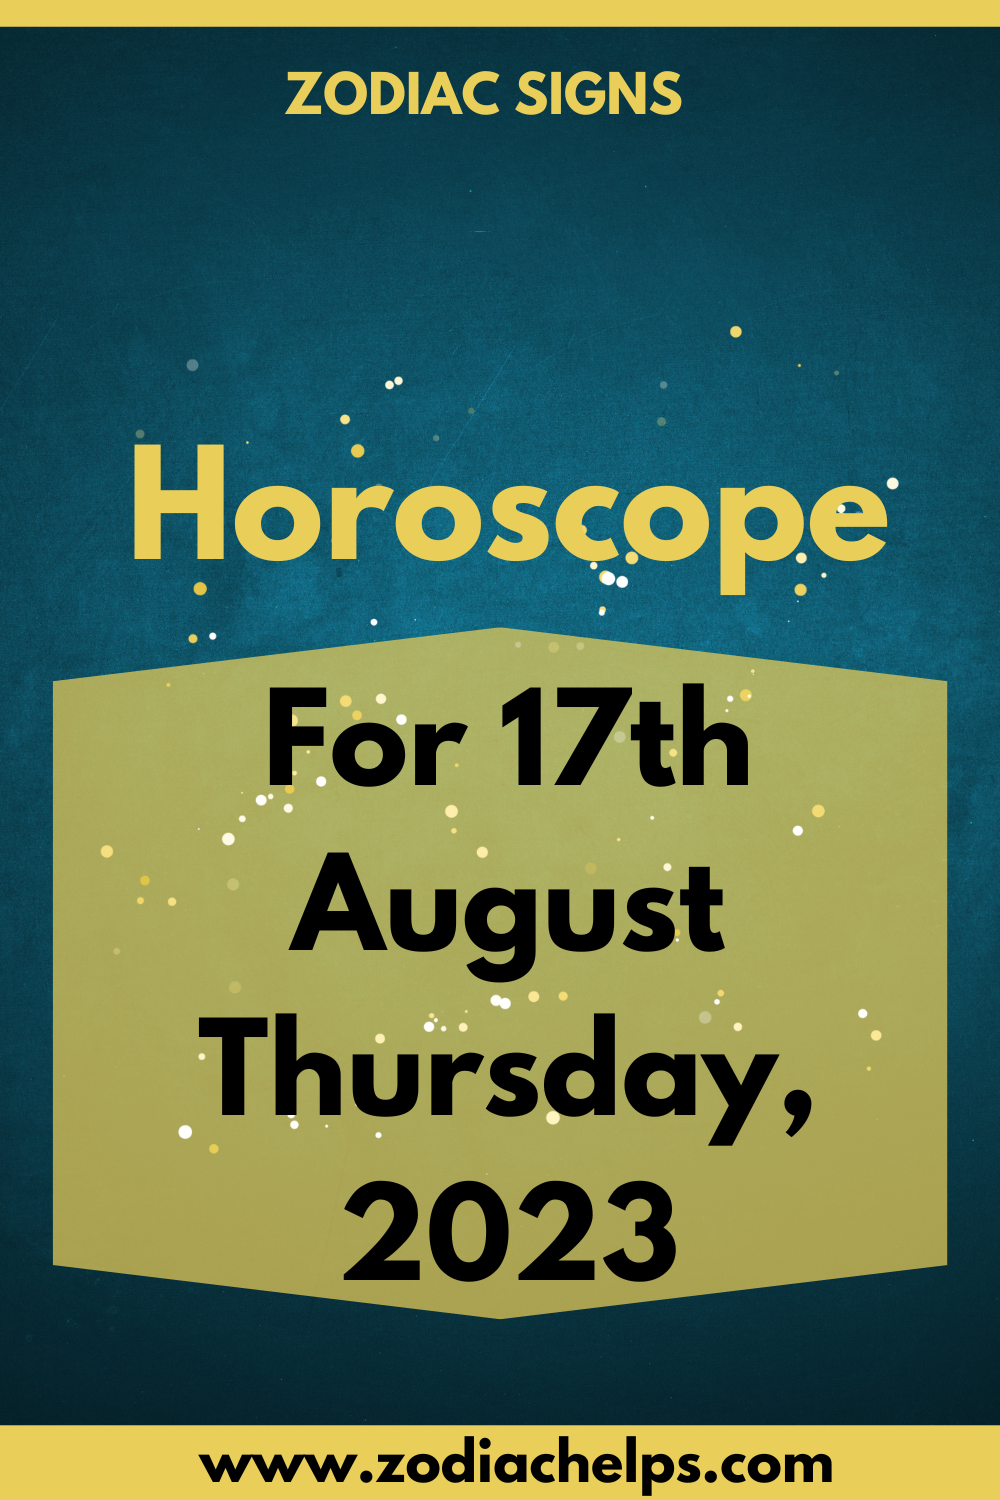 Horoscope for 17th August Thursday, 2023